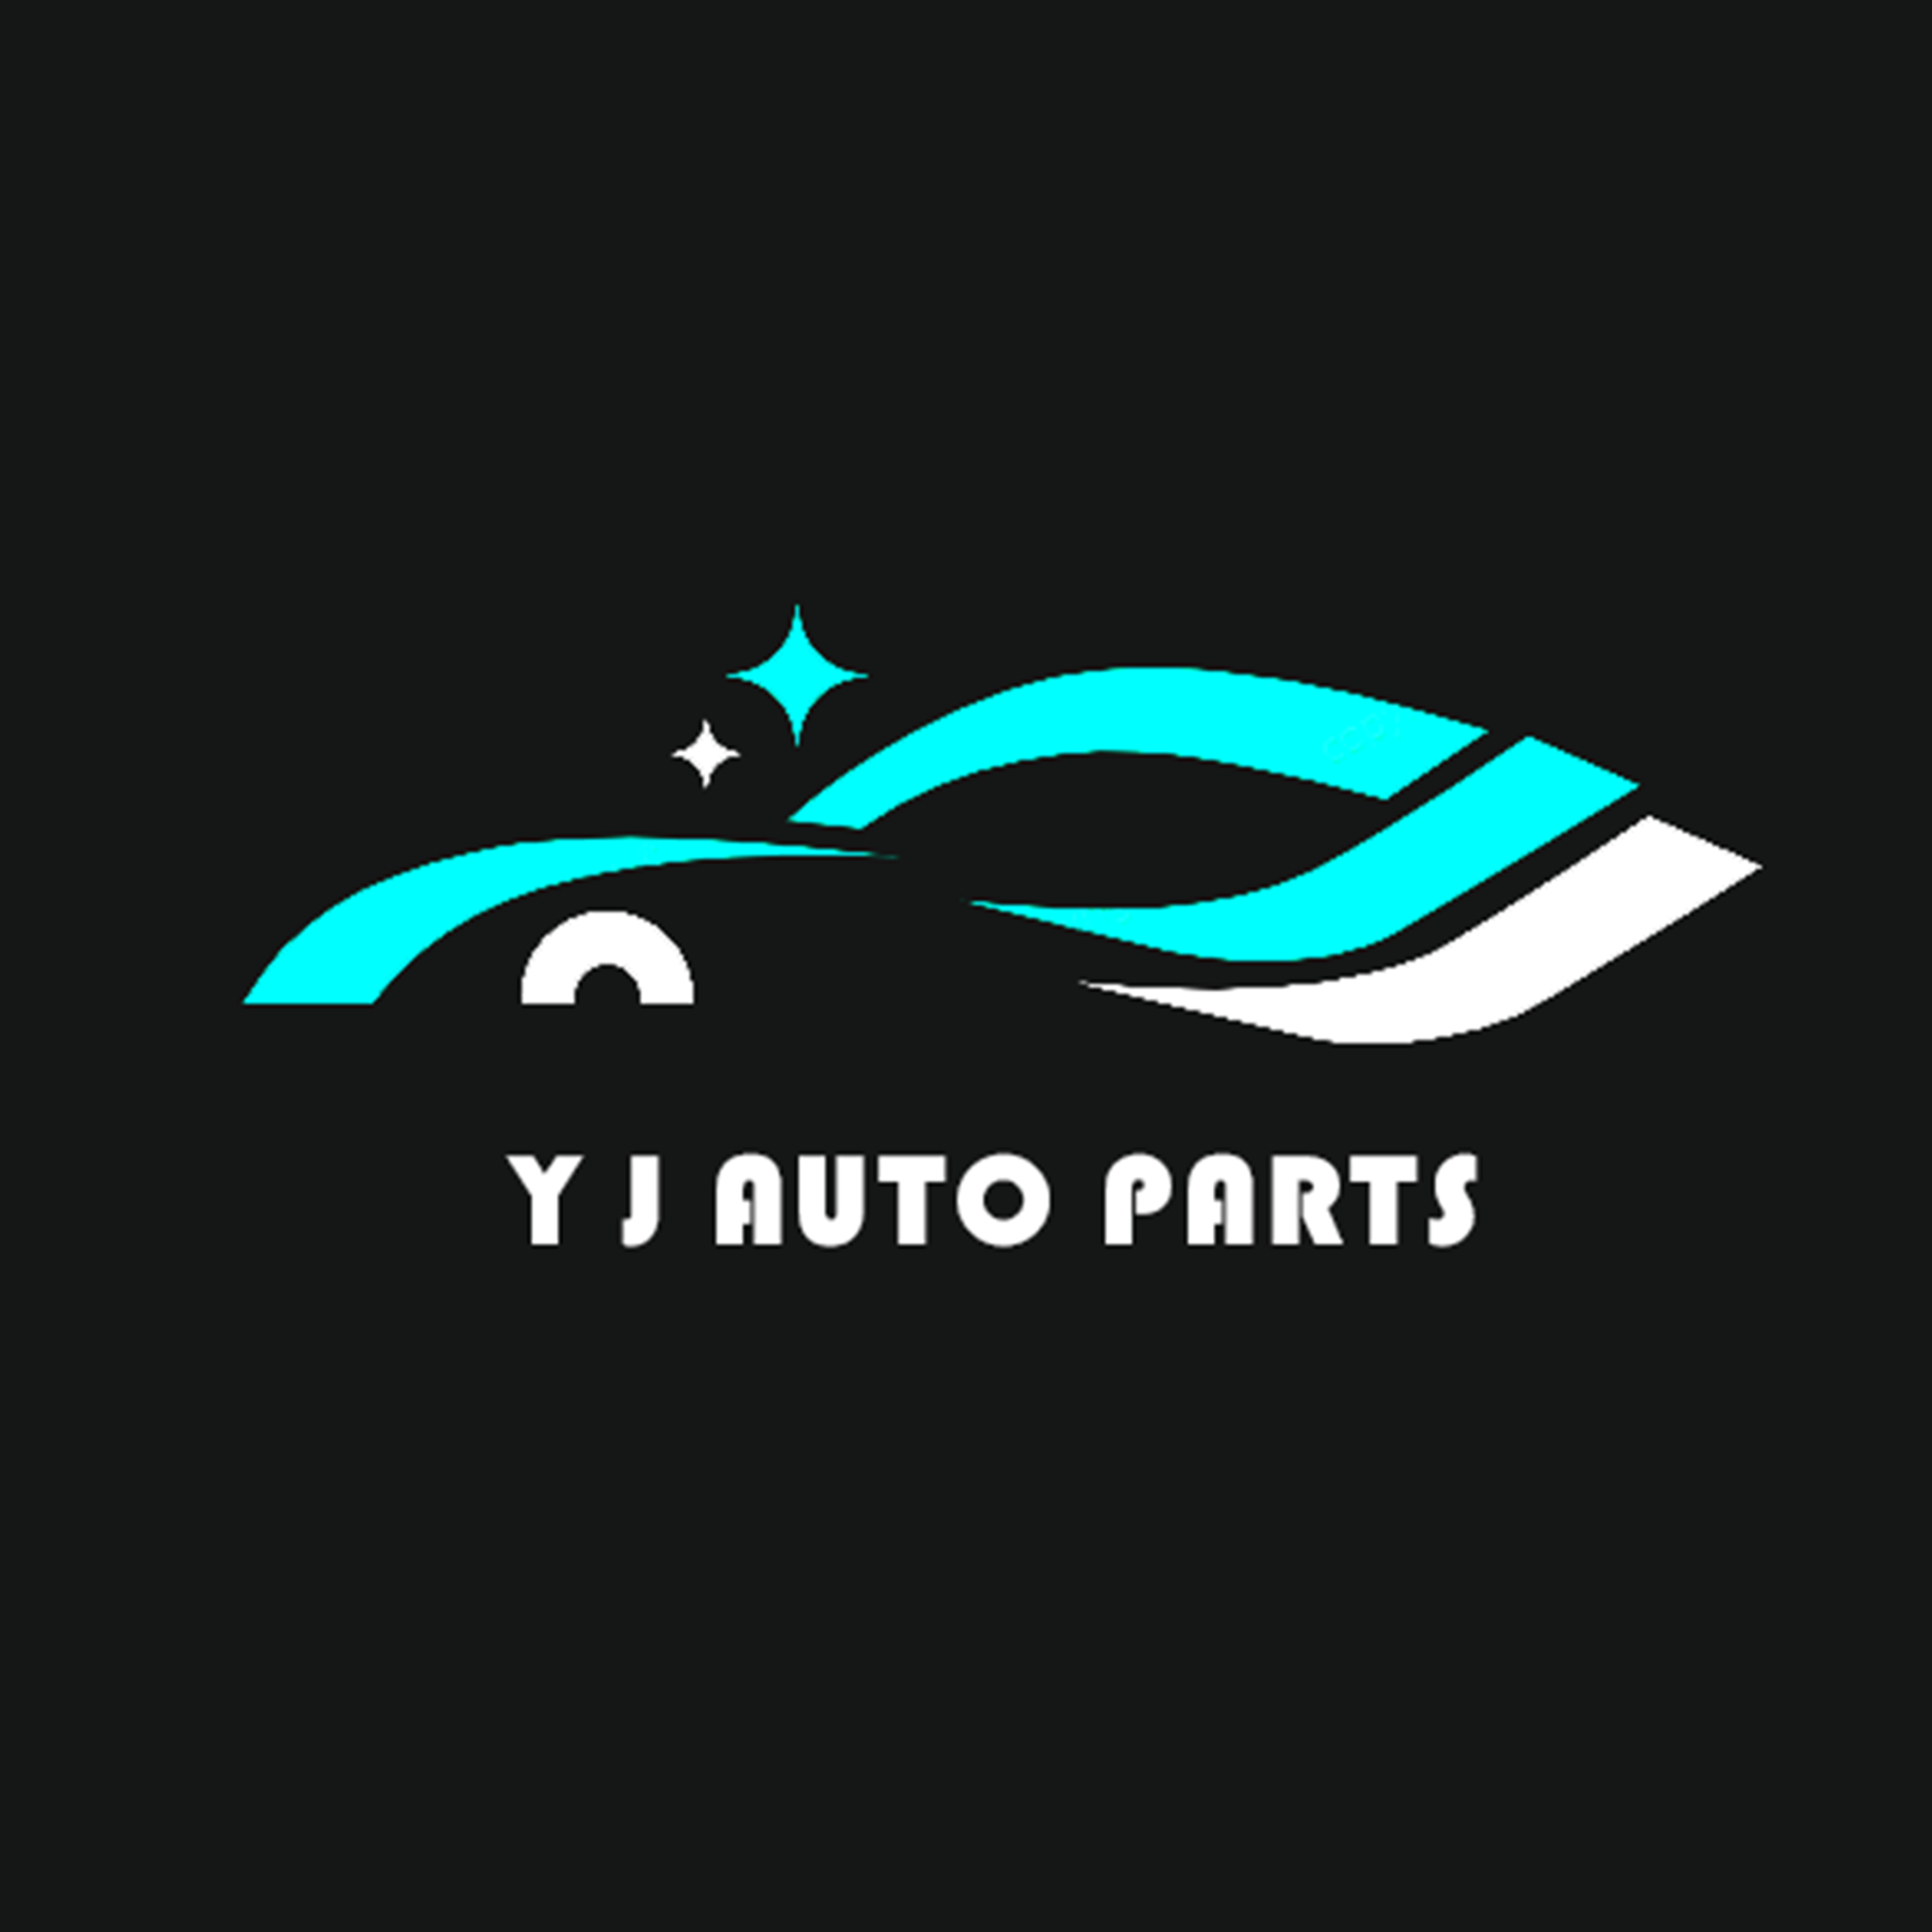 YJ Auto parts Co., Ltd